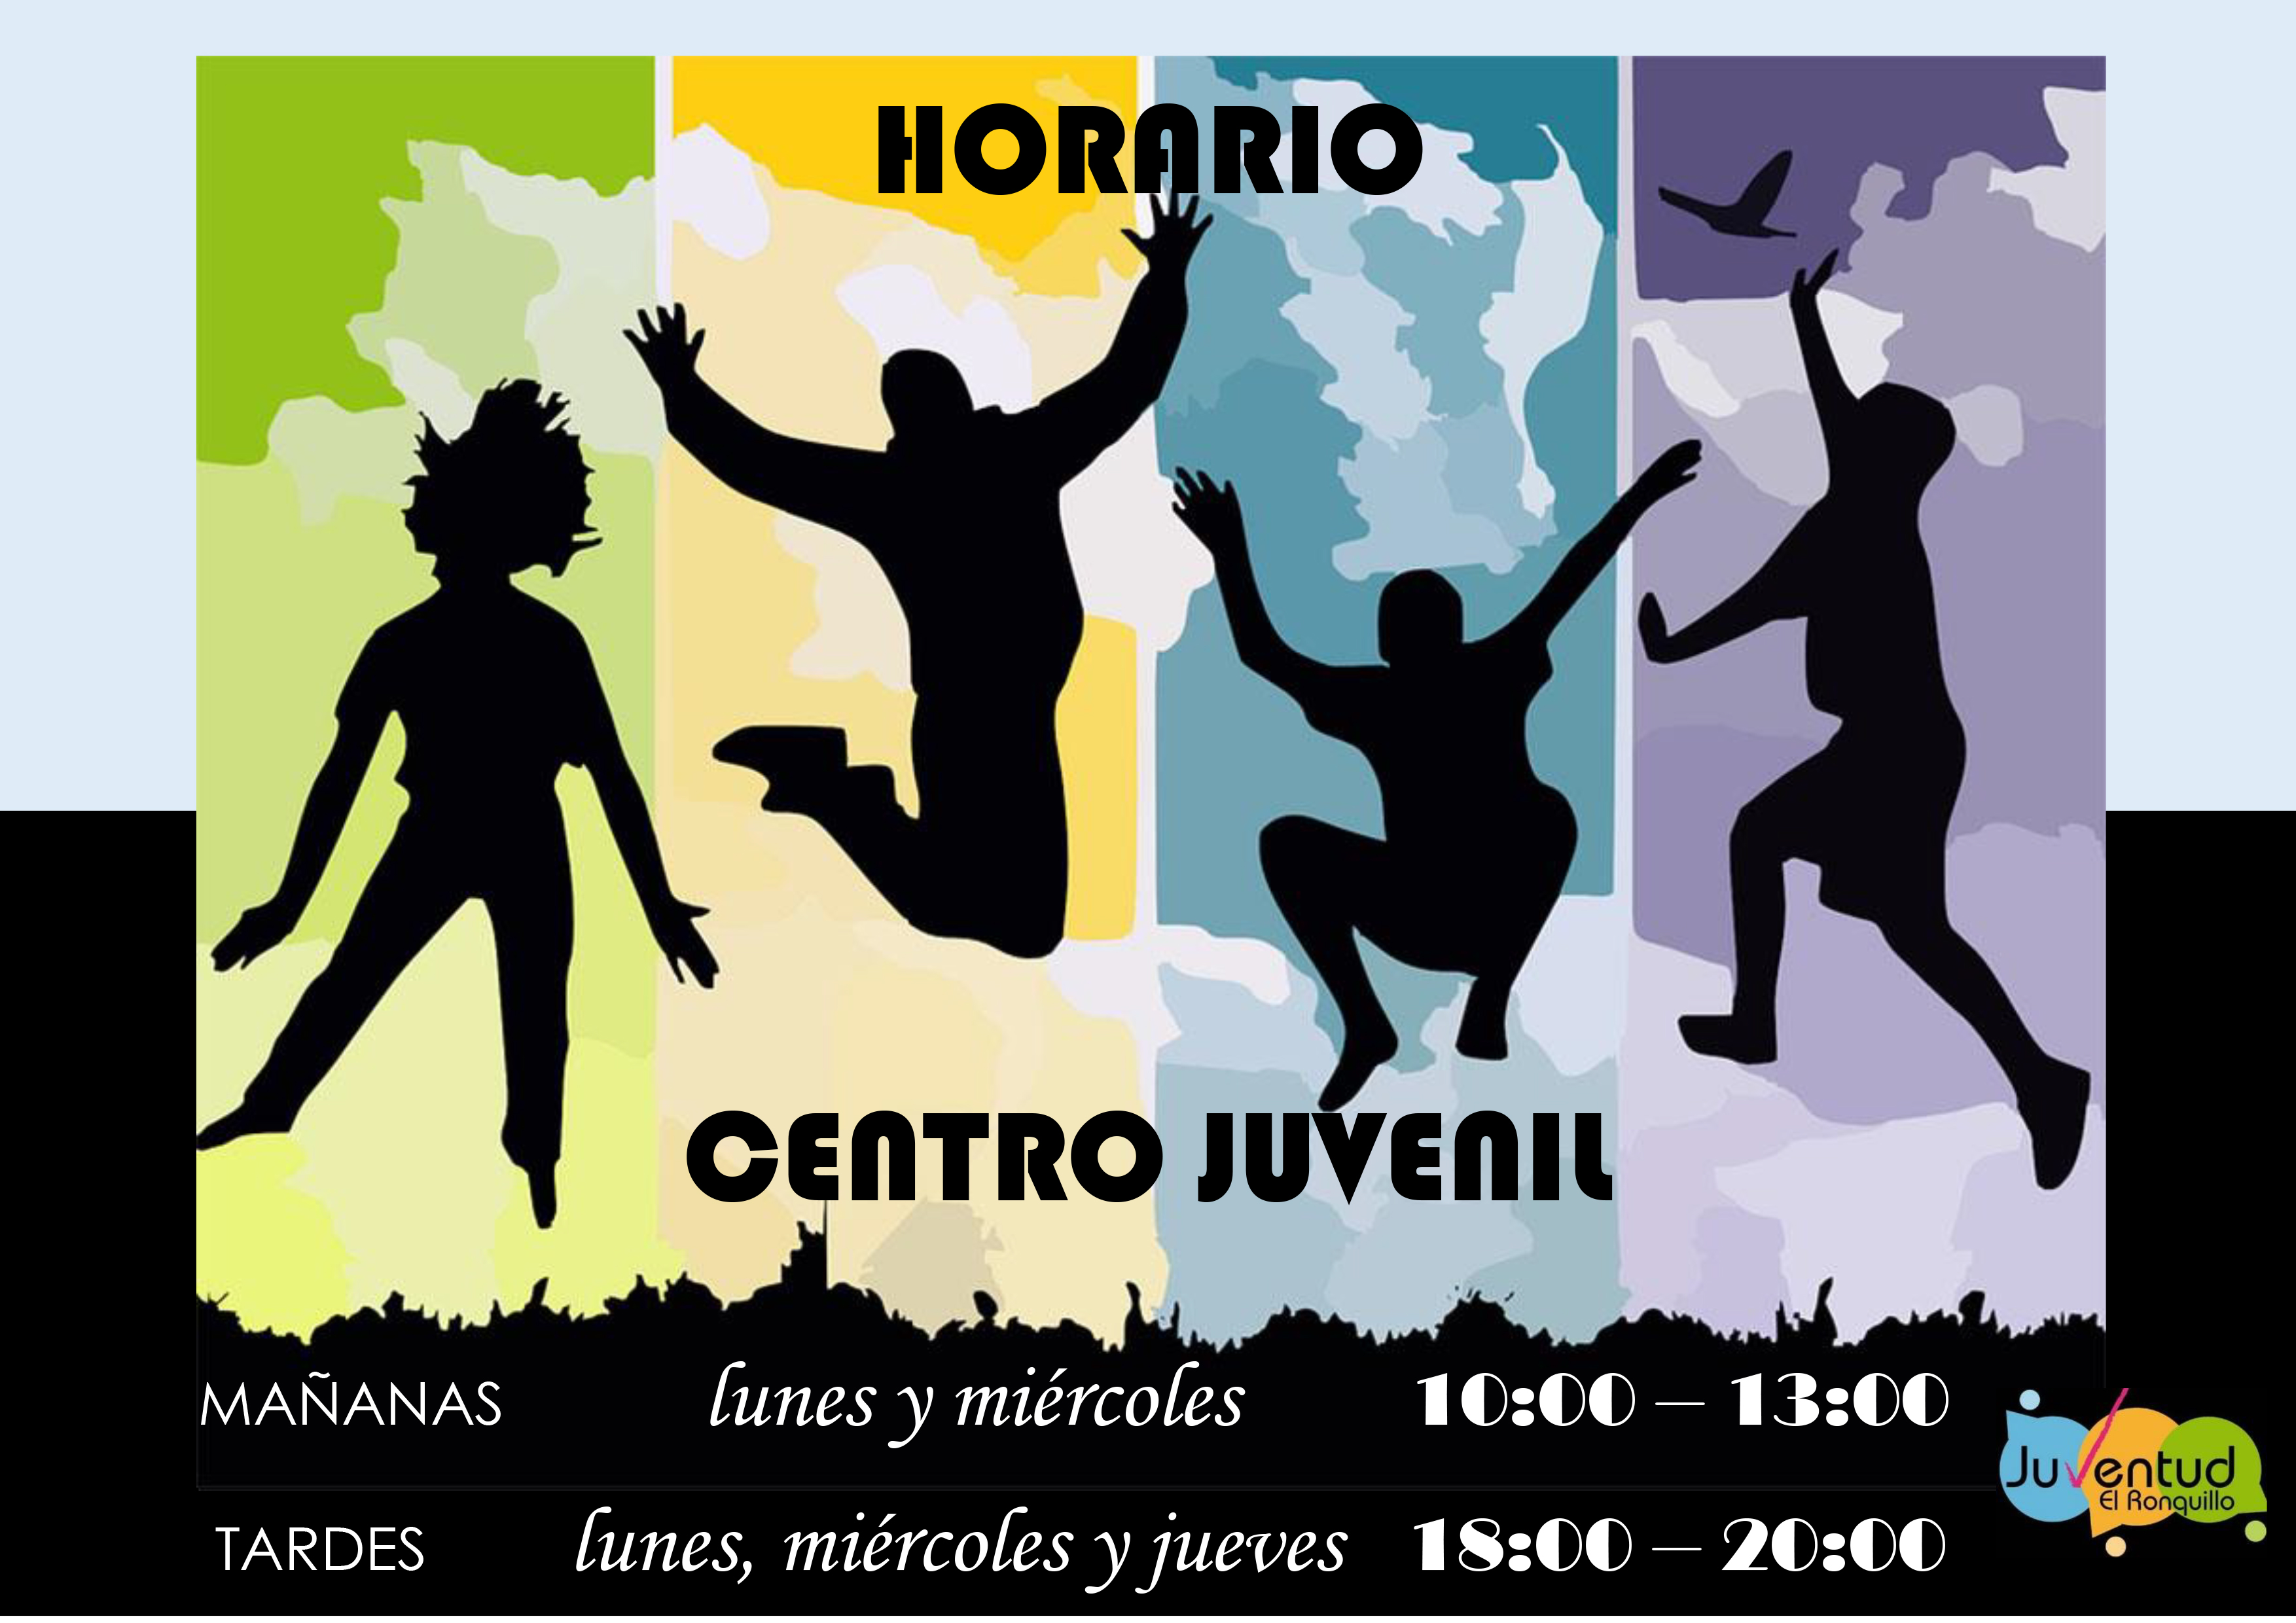 HORARIO Centro juvenil (1)